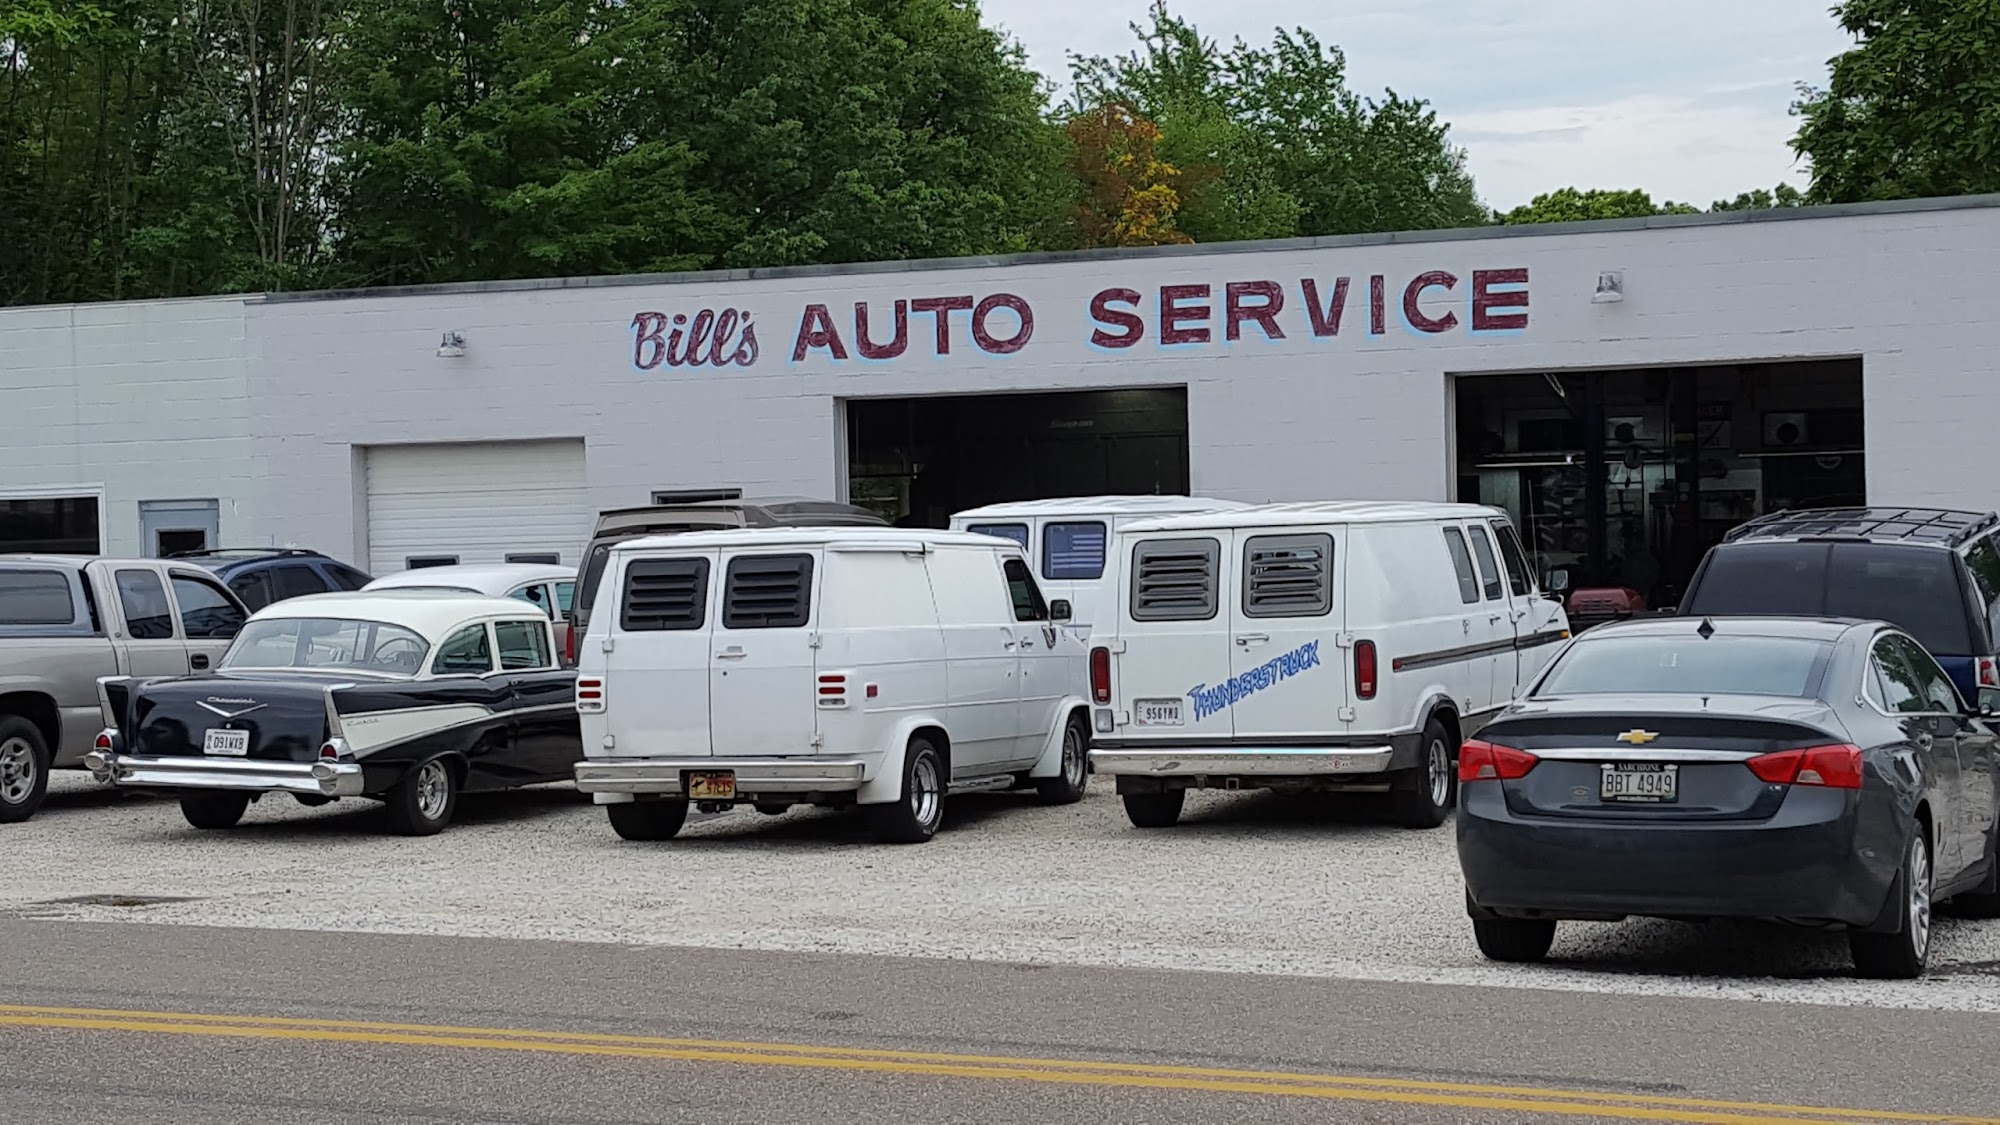 Bill's Auto Services 16747 Milton Ave, Lake Milton Ohio 44429